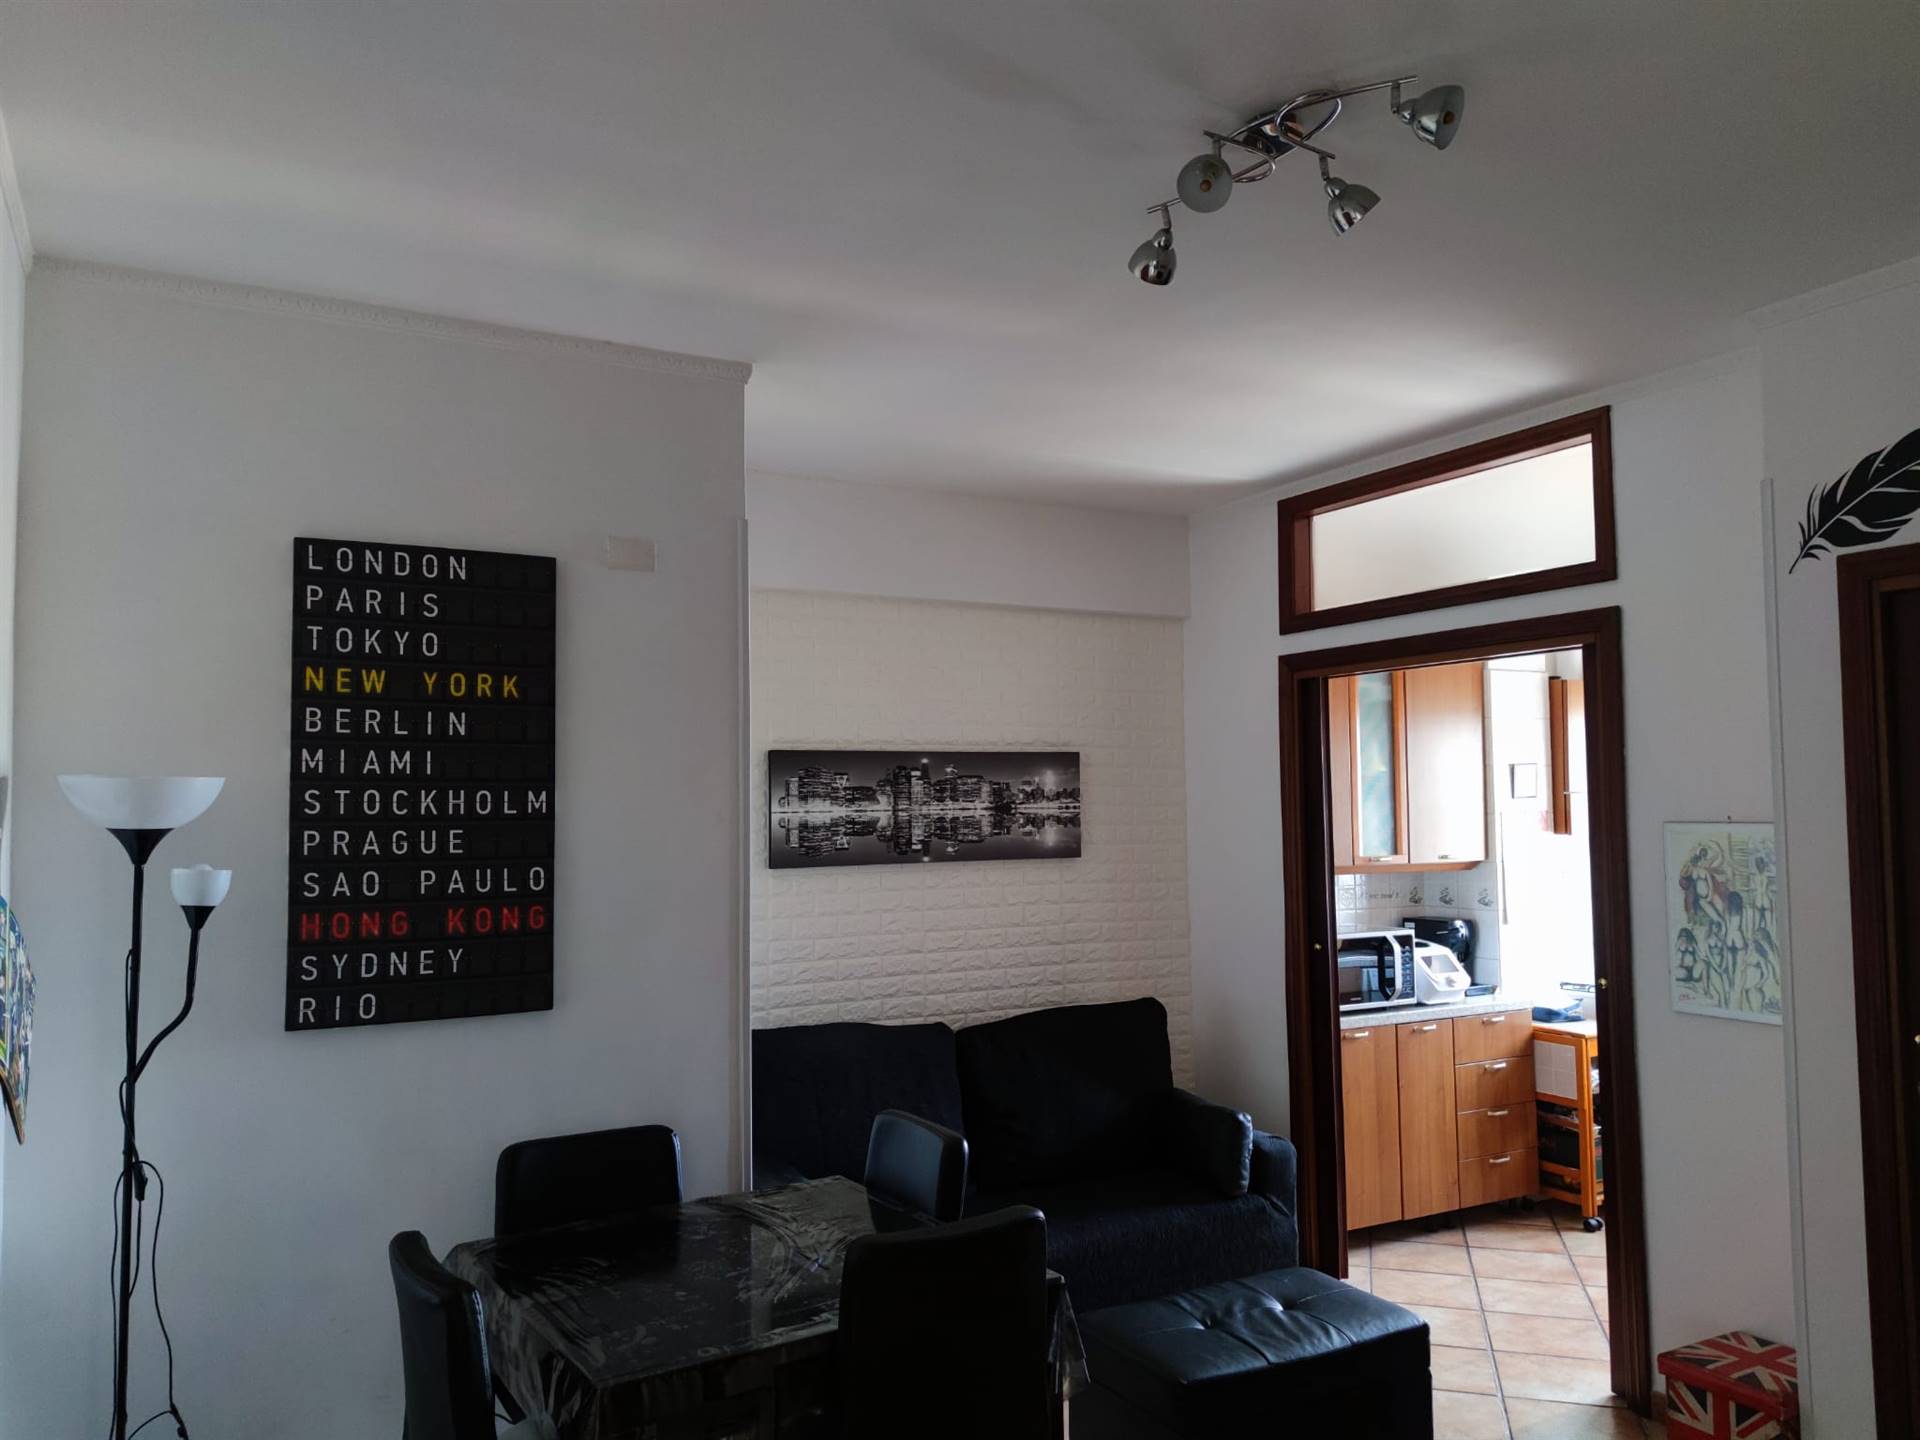 Appartamento in vendita a Roma, 1 locali, zona Zona: 25 . Trastevere - Testaccio, prezzo € 200.000 | CambioCasa.it